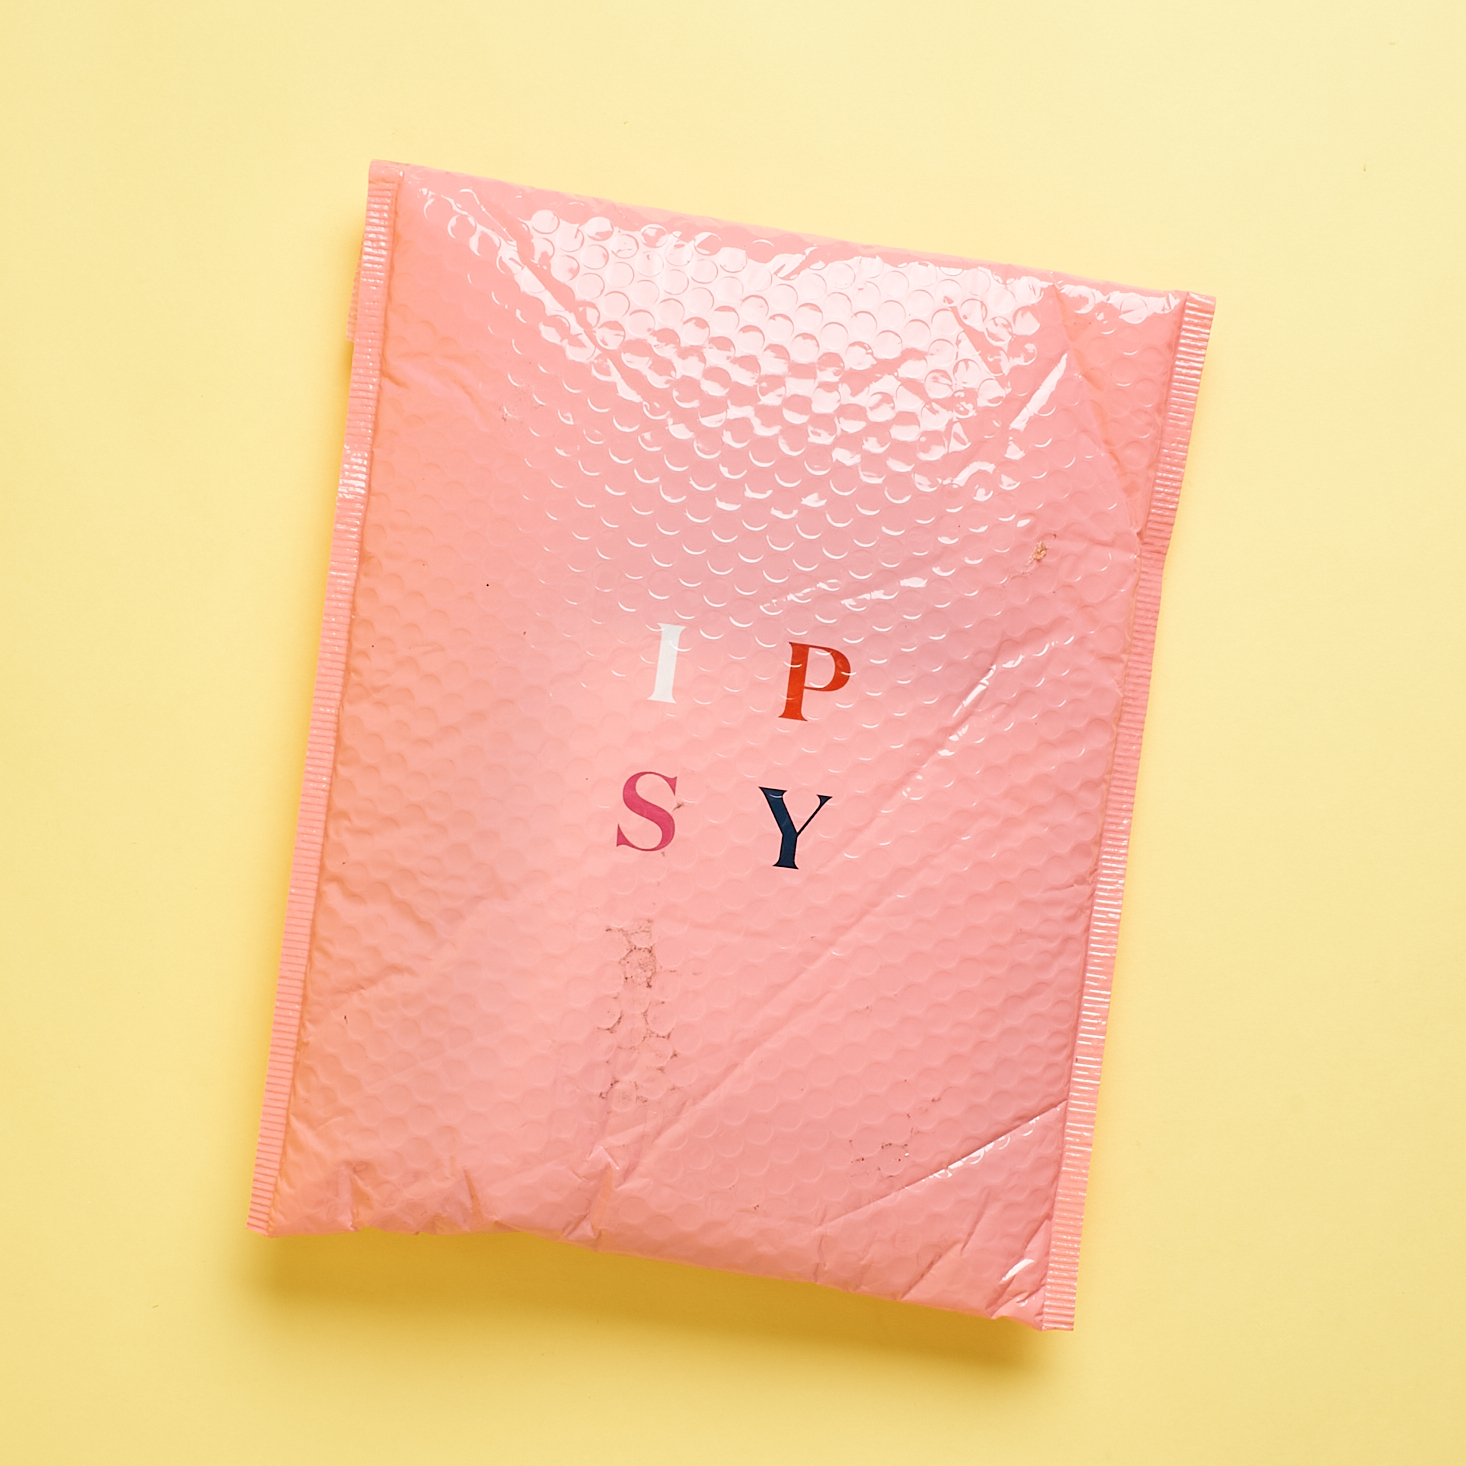 IPSY Glam Bag Plus Review – September 2020